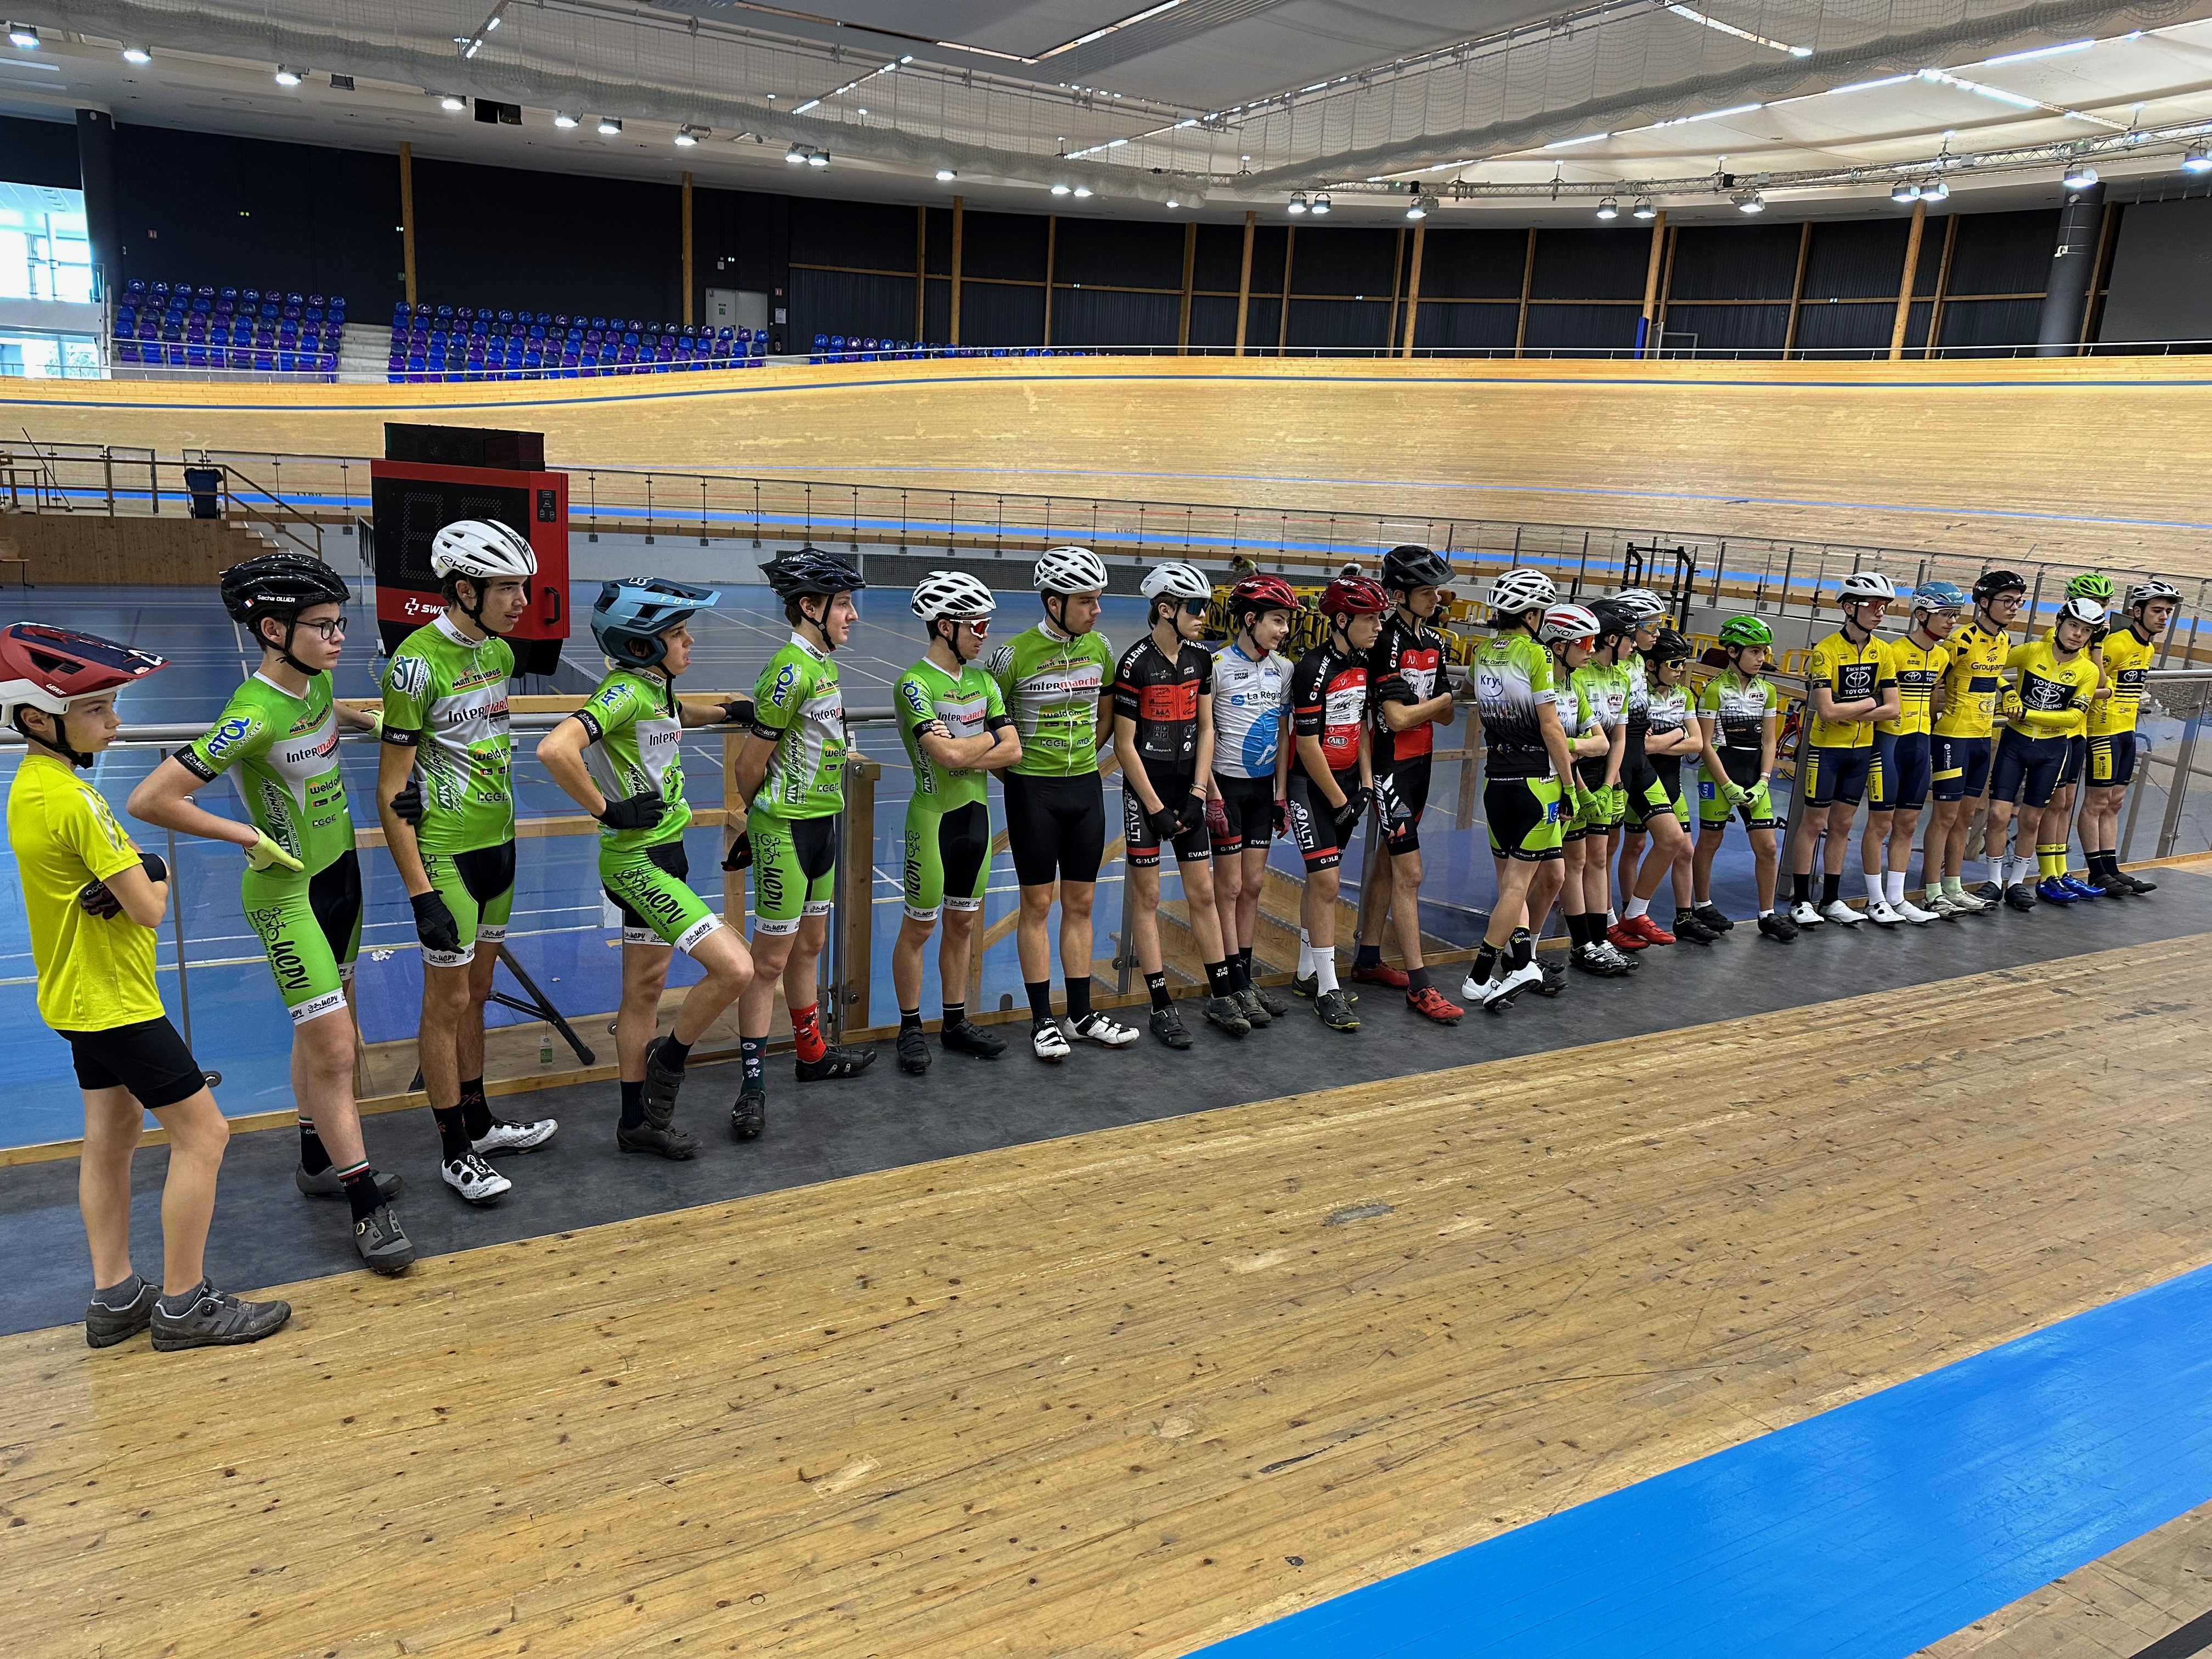 Cyclisme : de nouvelles victoires et podiums pour le Vélo Club du Velay